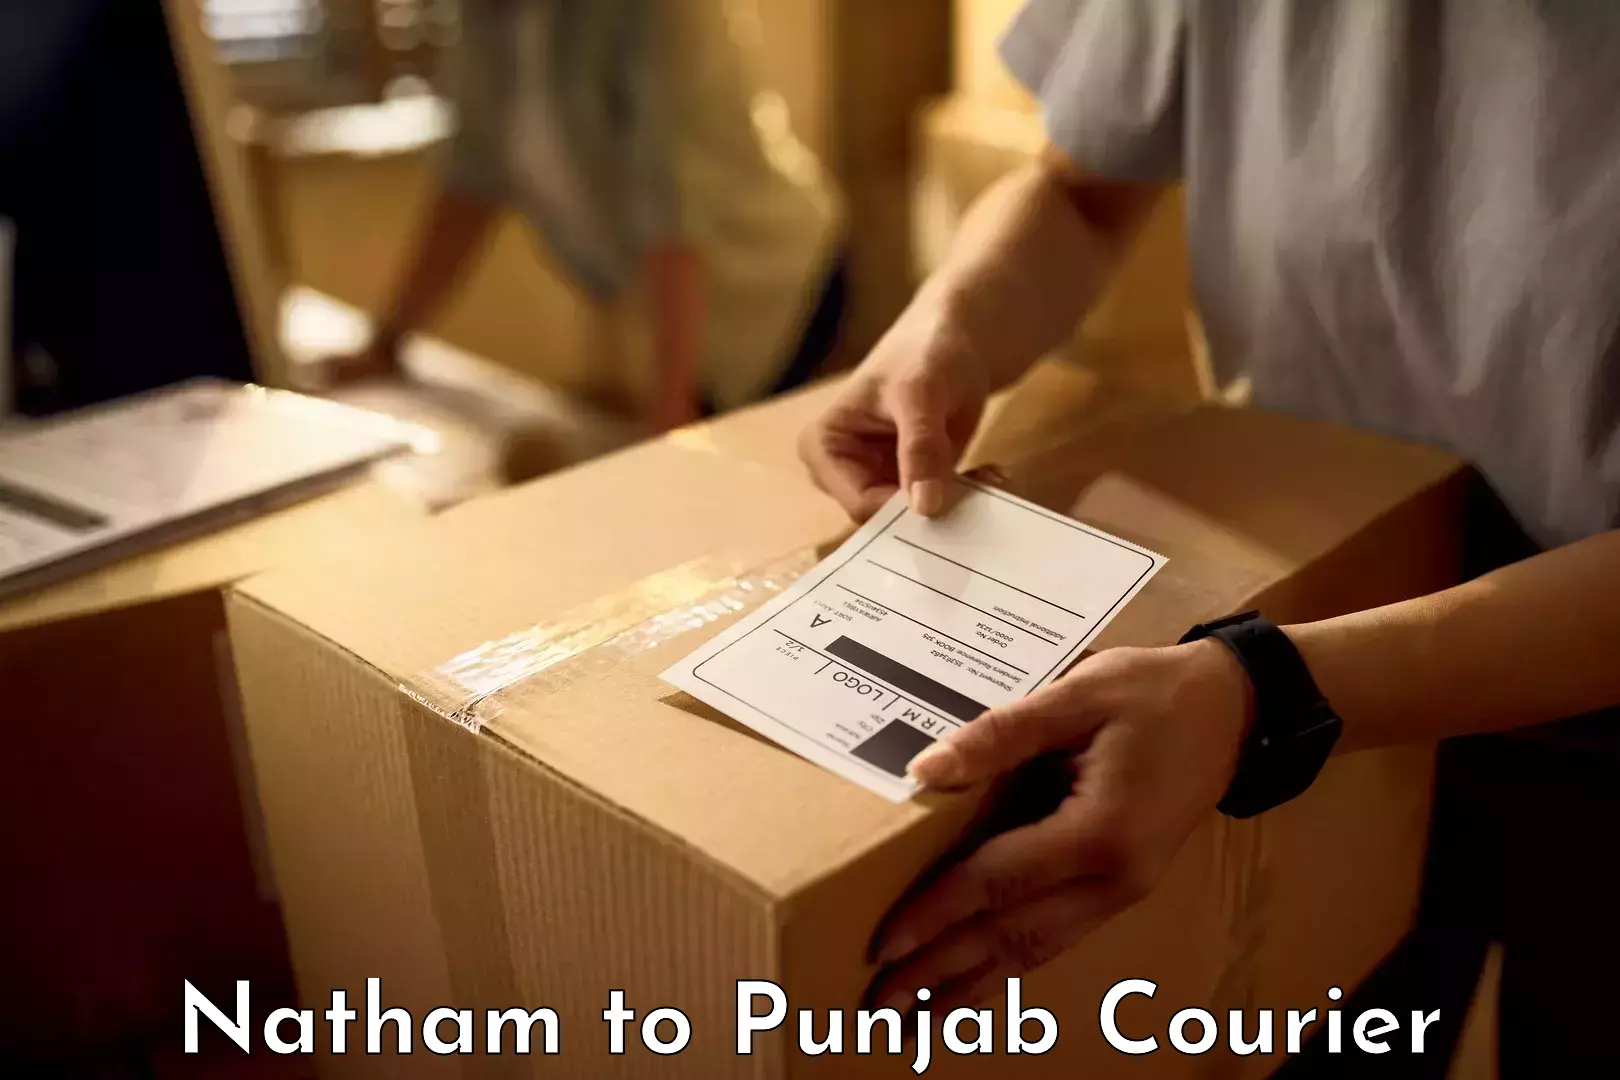 Luggage forwarding service Natham to Punjab